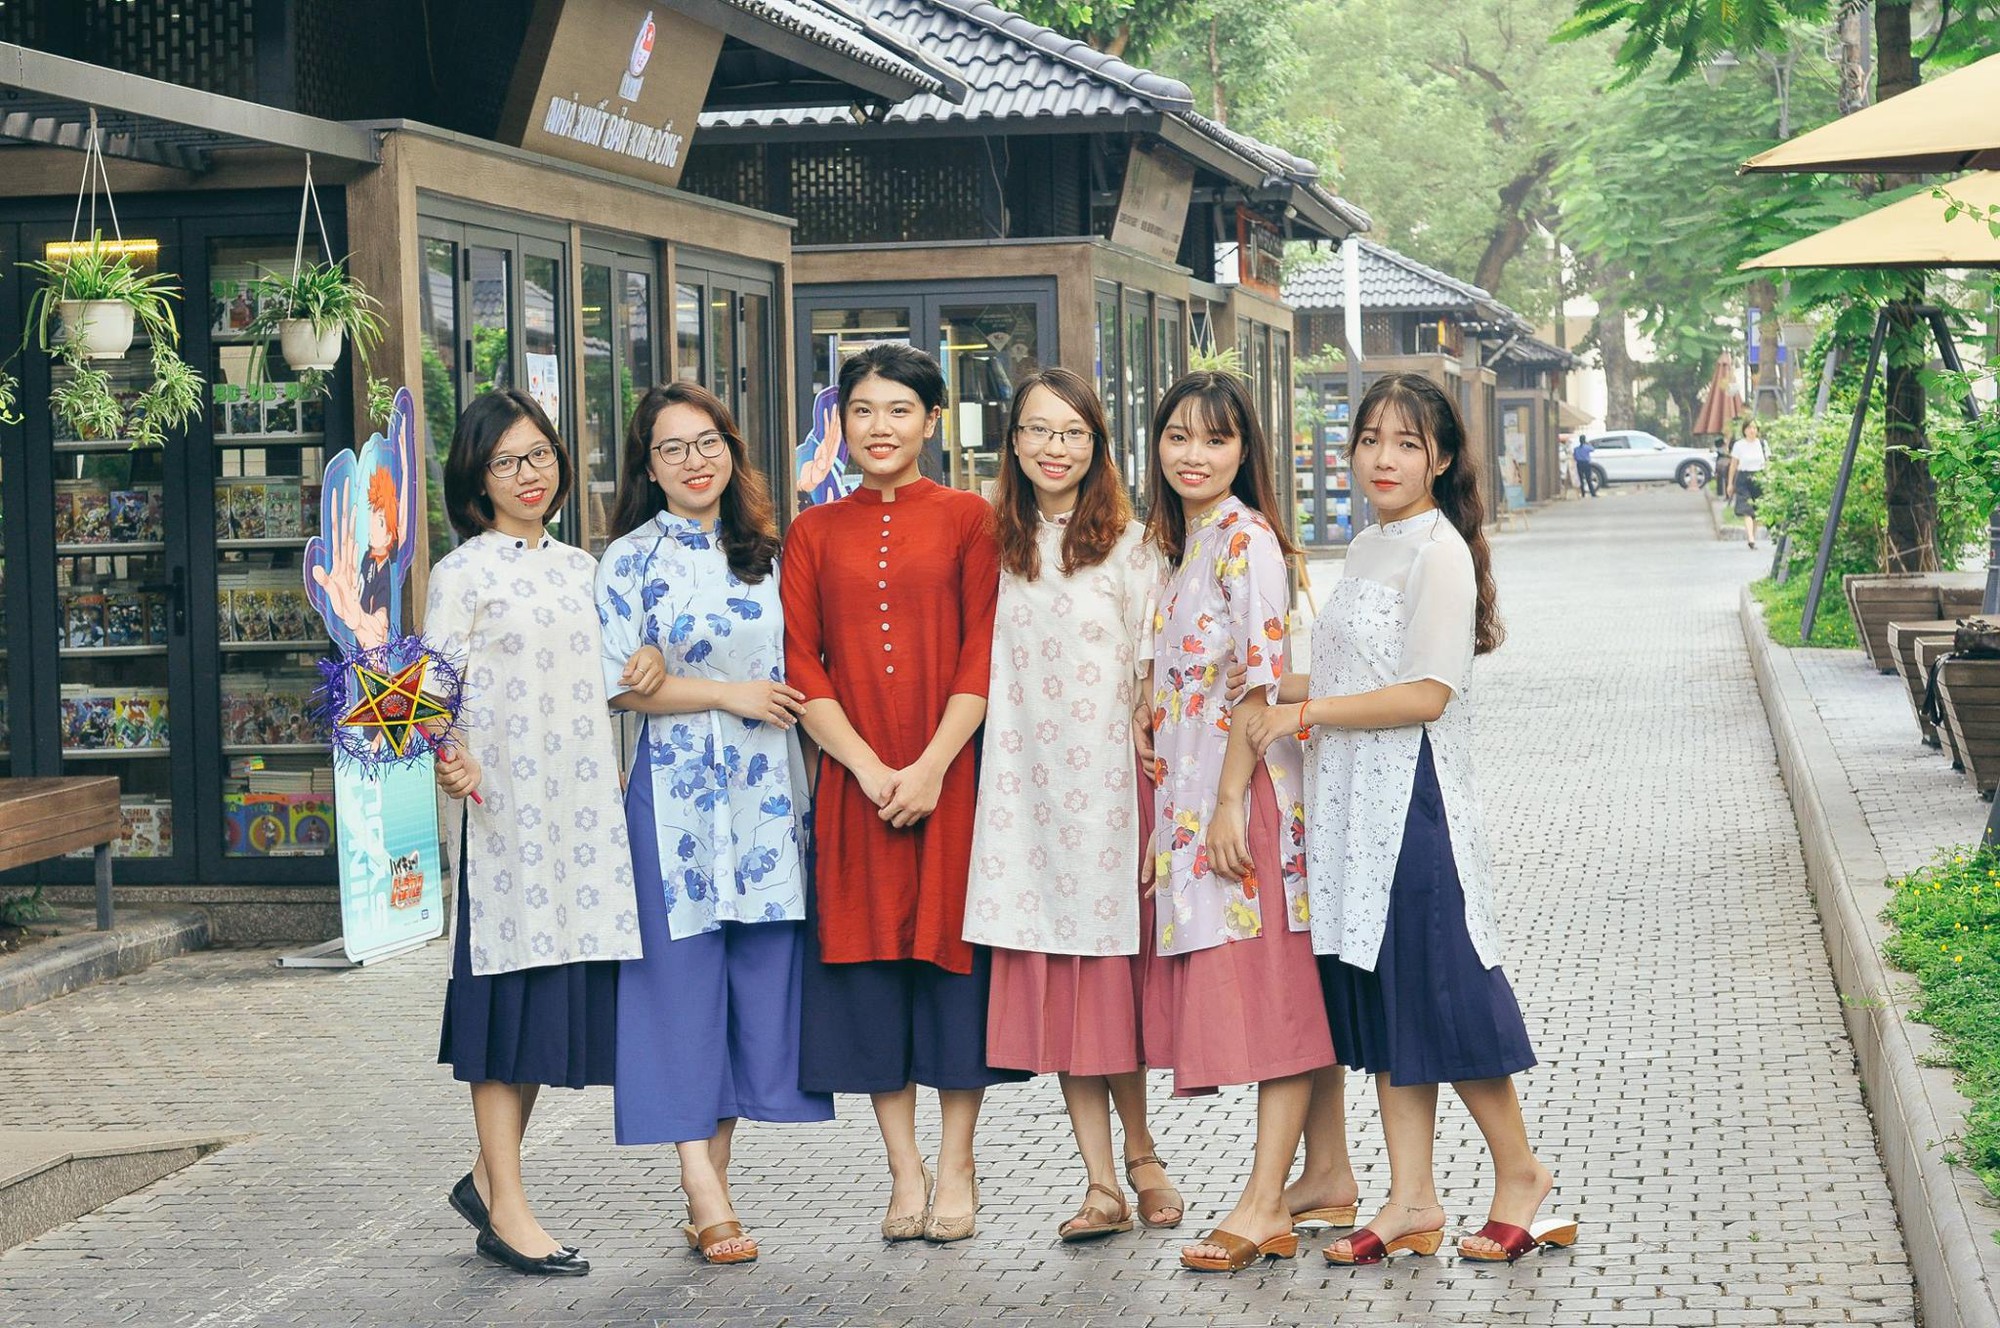 Năm qua, nhờ phim Việt mà áo dài lên ngôi, được giới trẻ diện nhiều không thua kém các hot trend thời thượng - Ảnh 19.